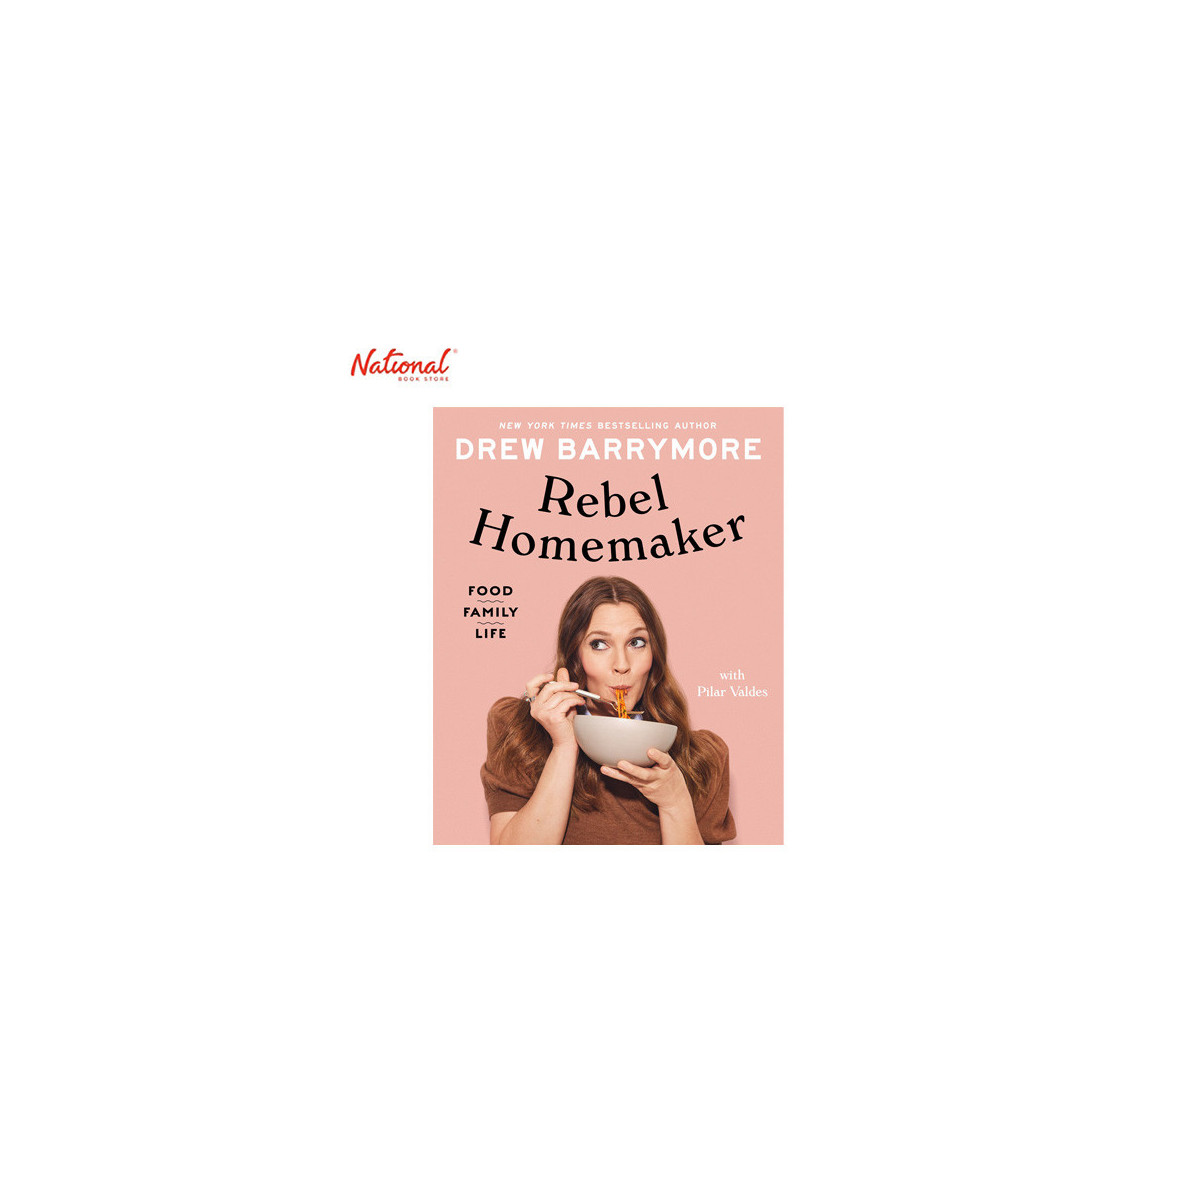 Rebel Homemaker : Food, Family, Life Hardcover by Drew Barrymore - Cookbooks